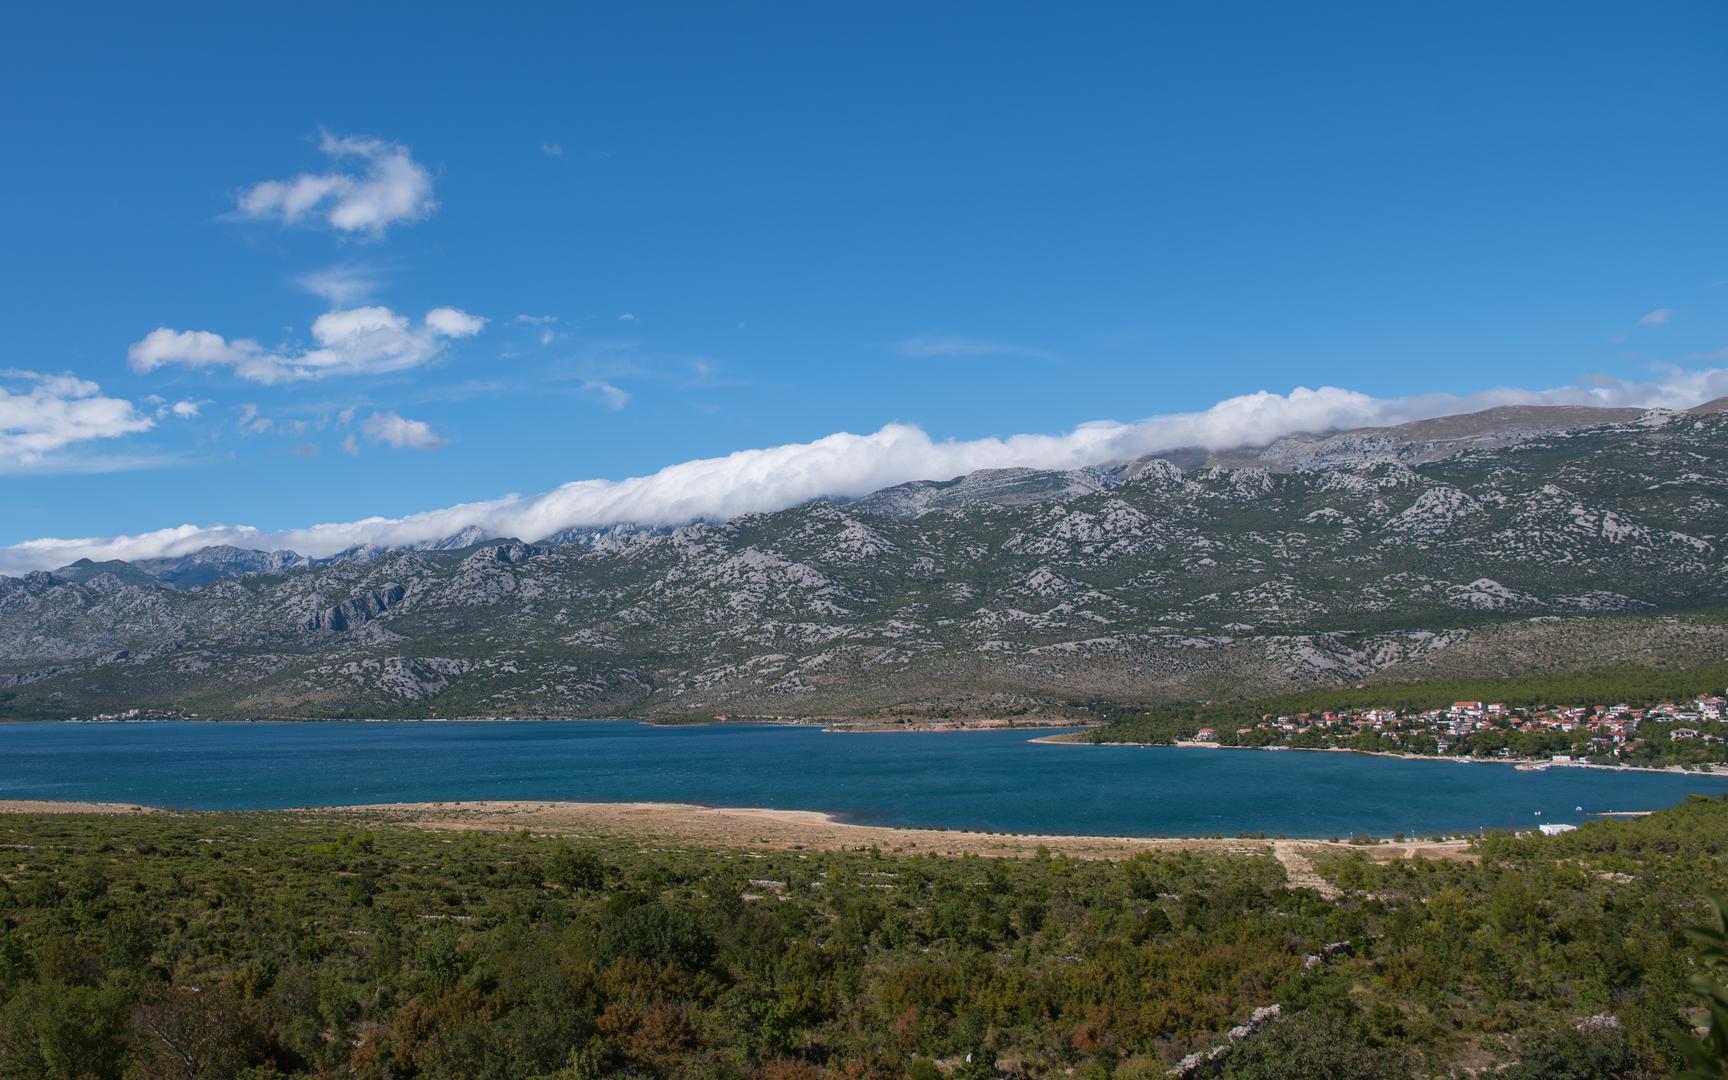 Druga najviše temperatura ikad izmjerena u Hrvatskoj bila je u Starigrad Paklenici kada je 10. kolovoza 2017 godine izmjereno 42,7 stupnjeva Celzijevih.